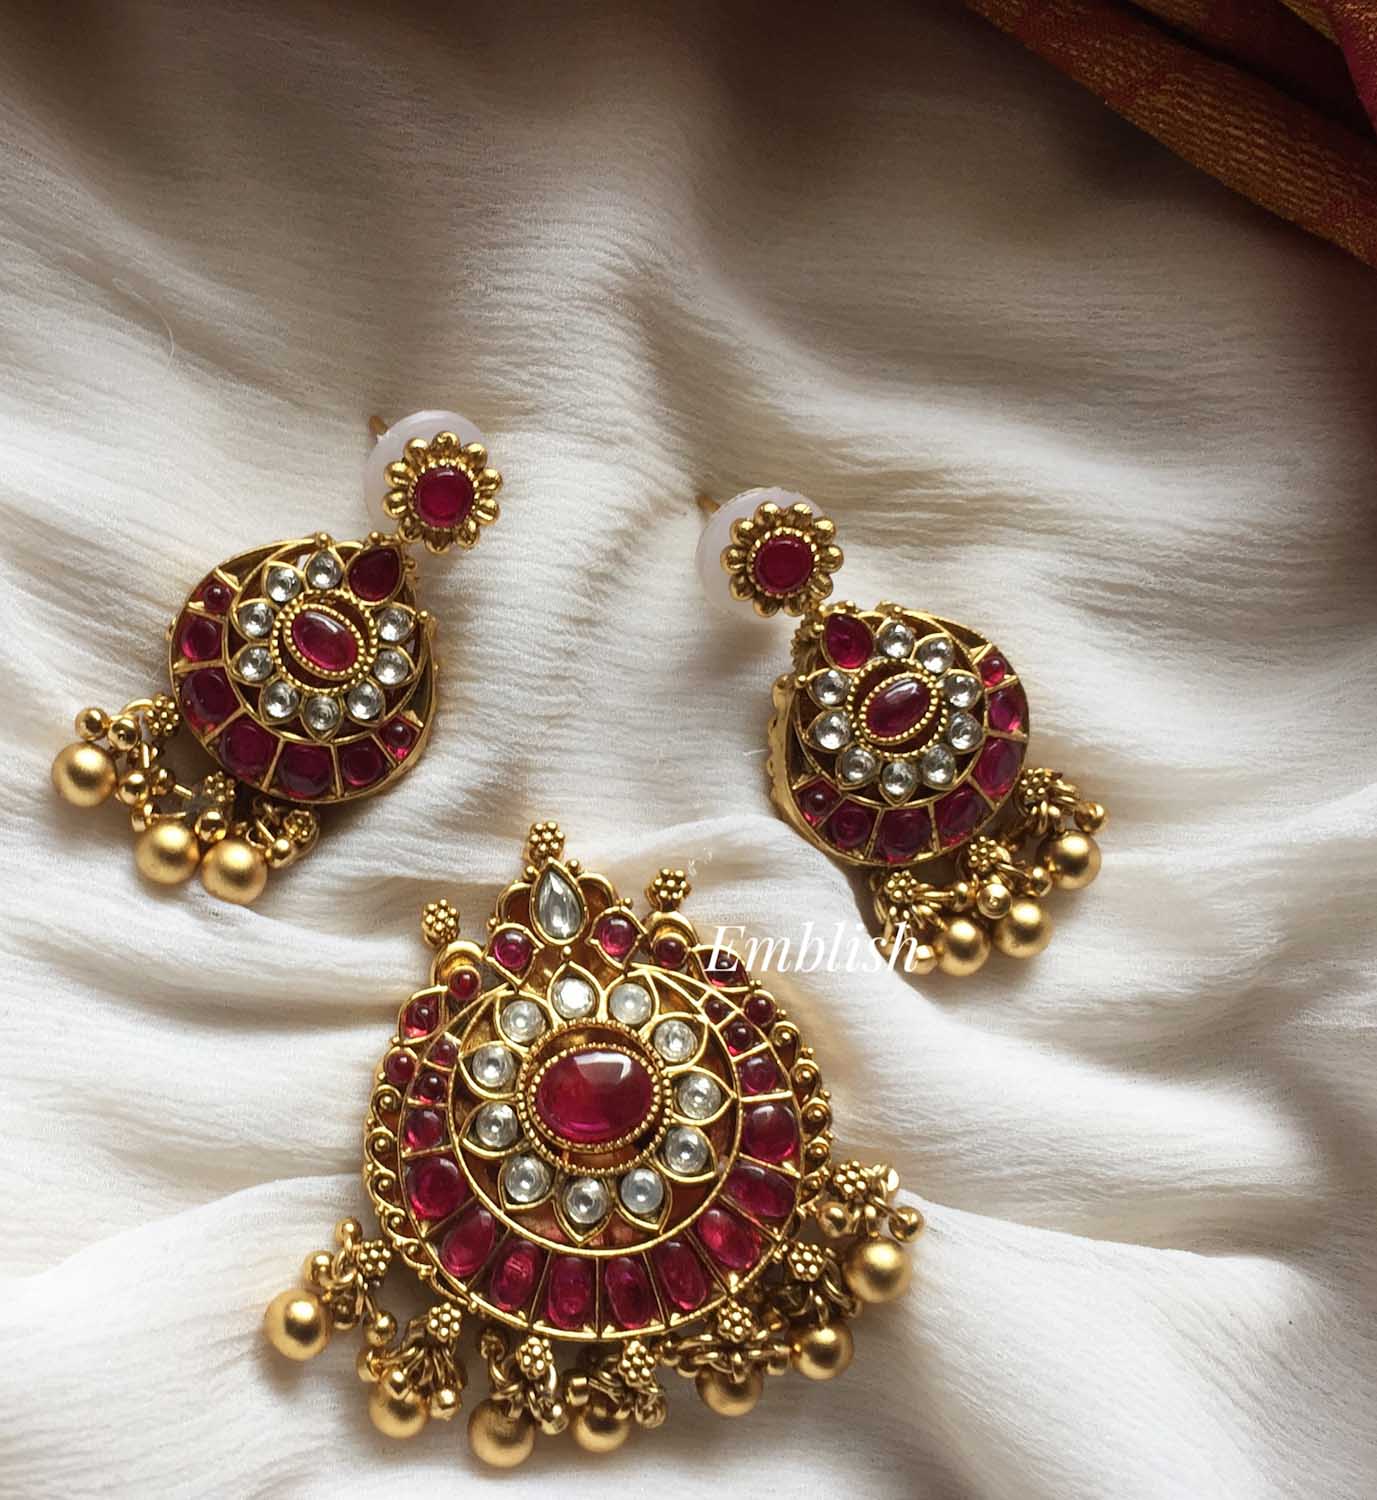 Reversible Kemp Lakshmi pendant set- red with white